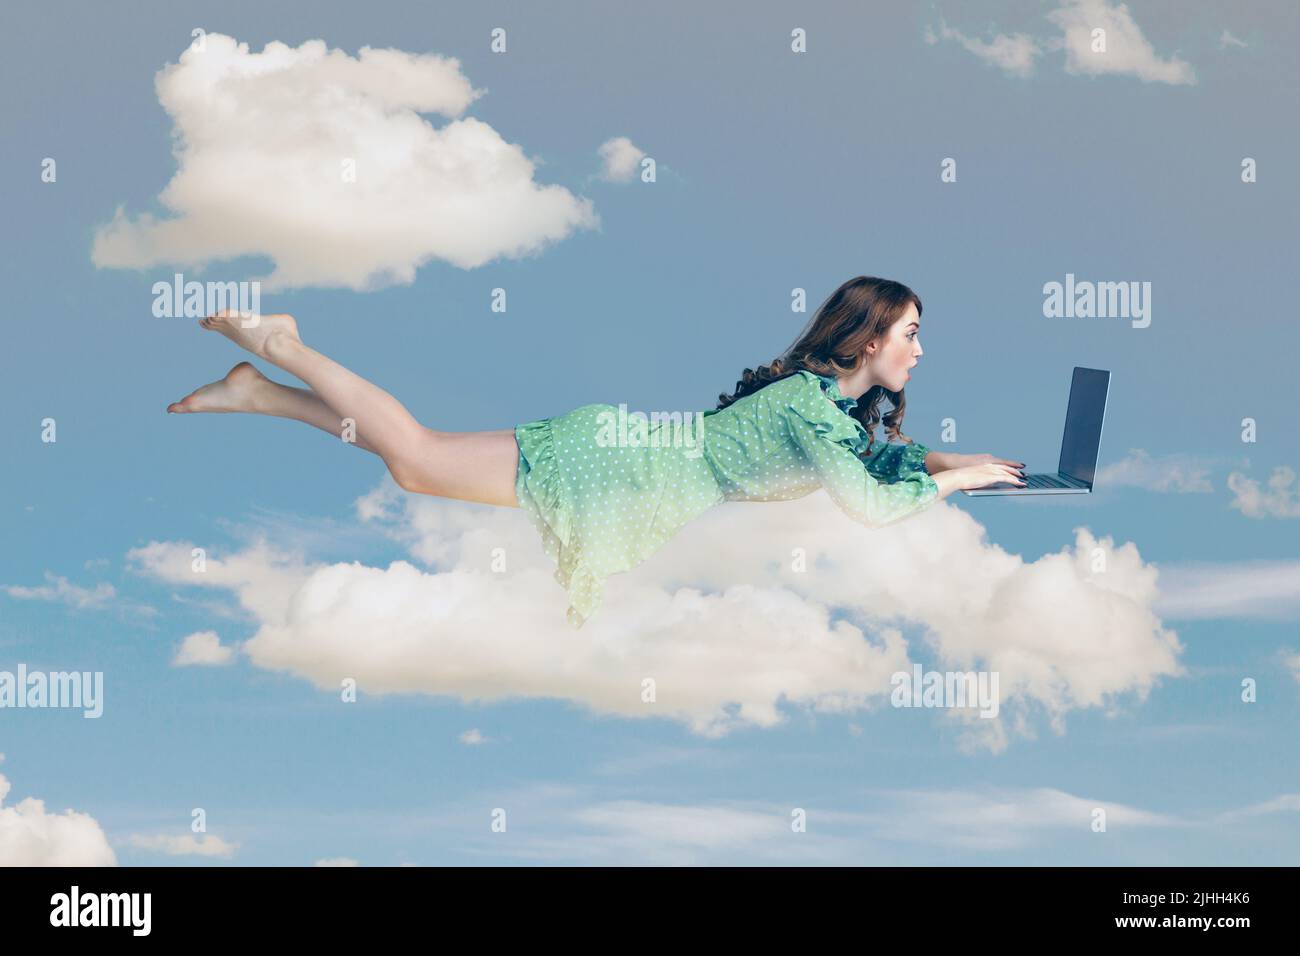 Schwebt in der Luft. Überrascht aufgeregt Mädchen Rüschen Kleid schweben mit Laptop, Tastatur eingeben, lesen schockierende Nachricht am Computer. Fliegen in den Himmel. Collage Komposition am Tag wolkig blauen Himmel Stockfoto